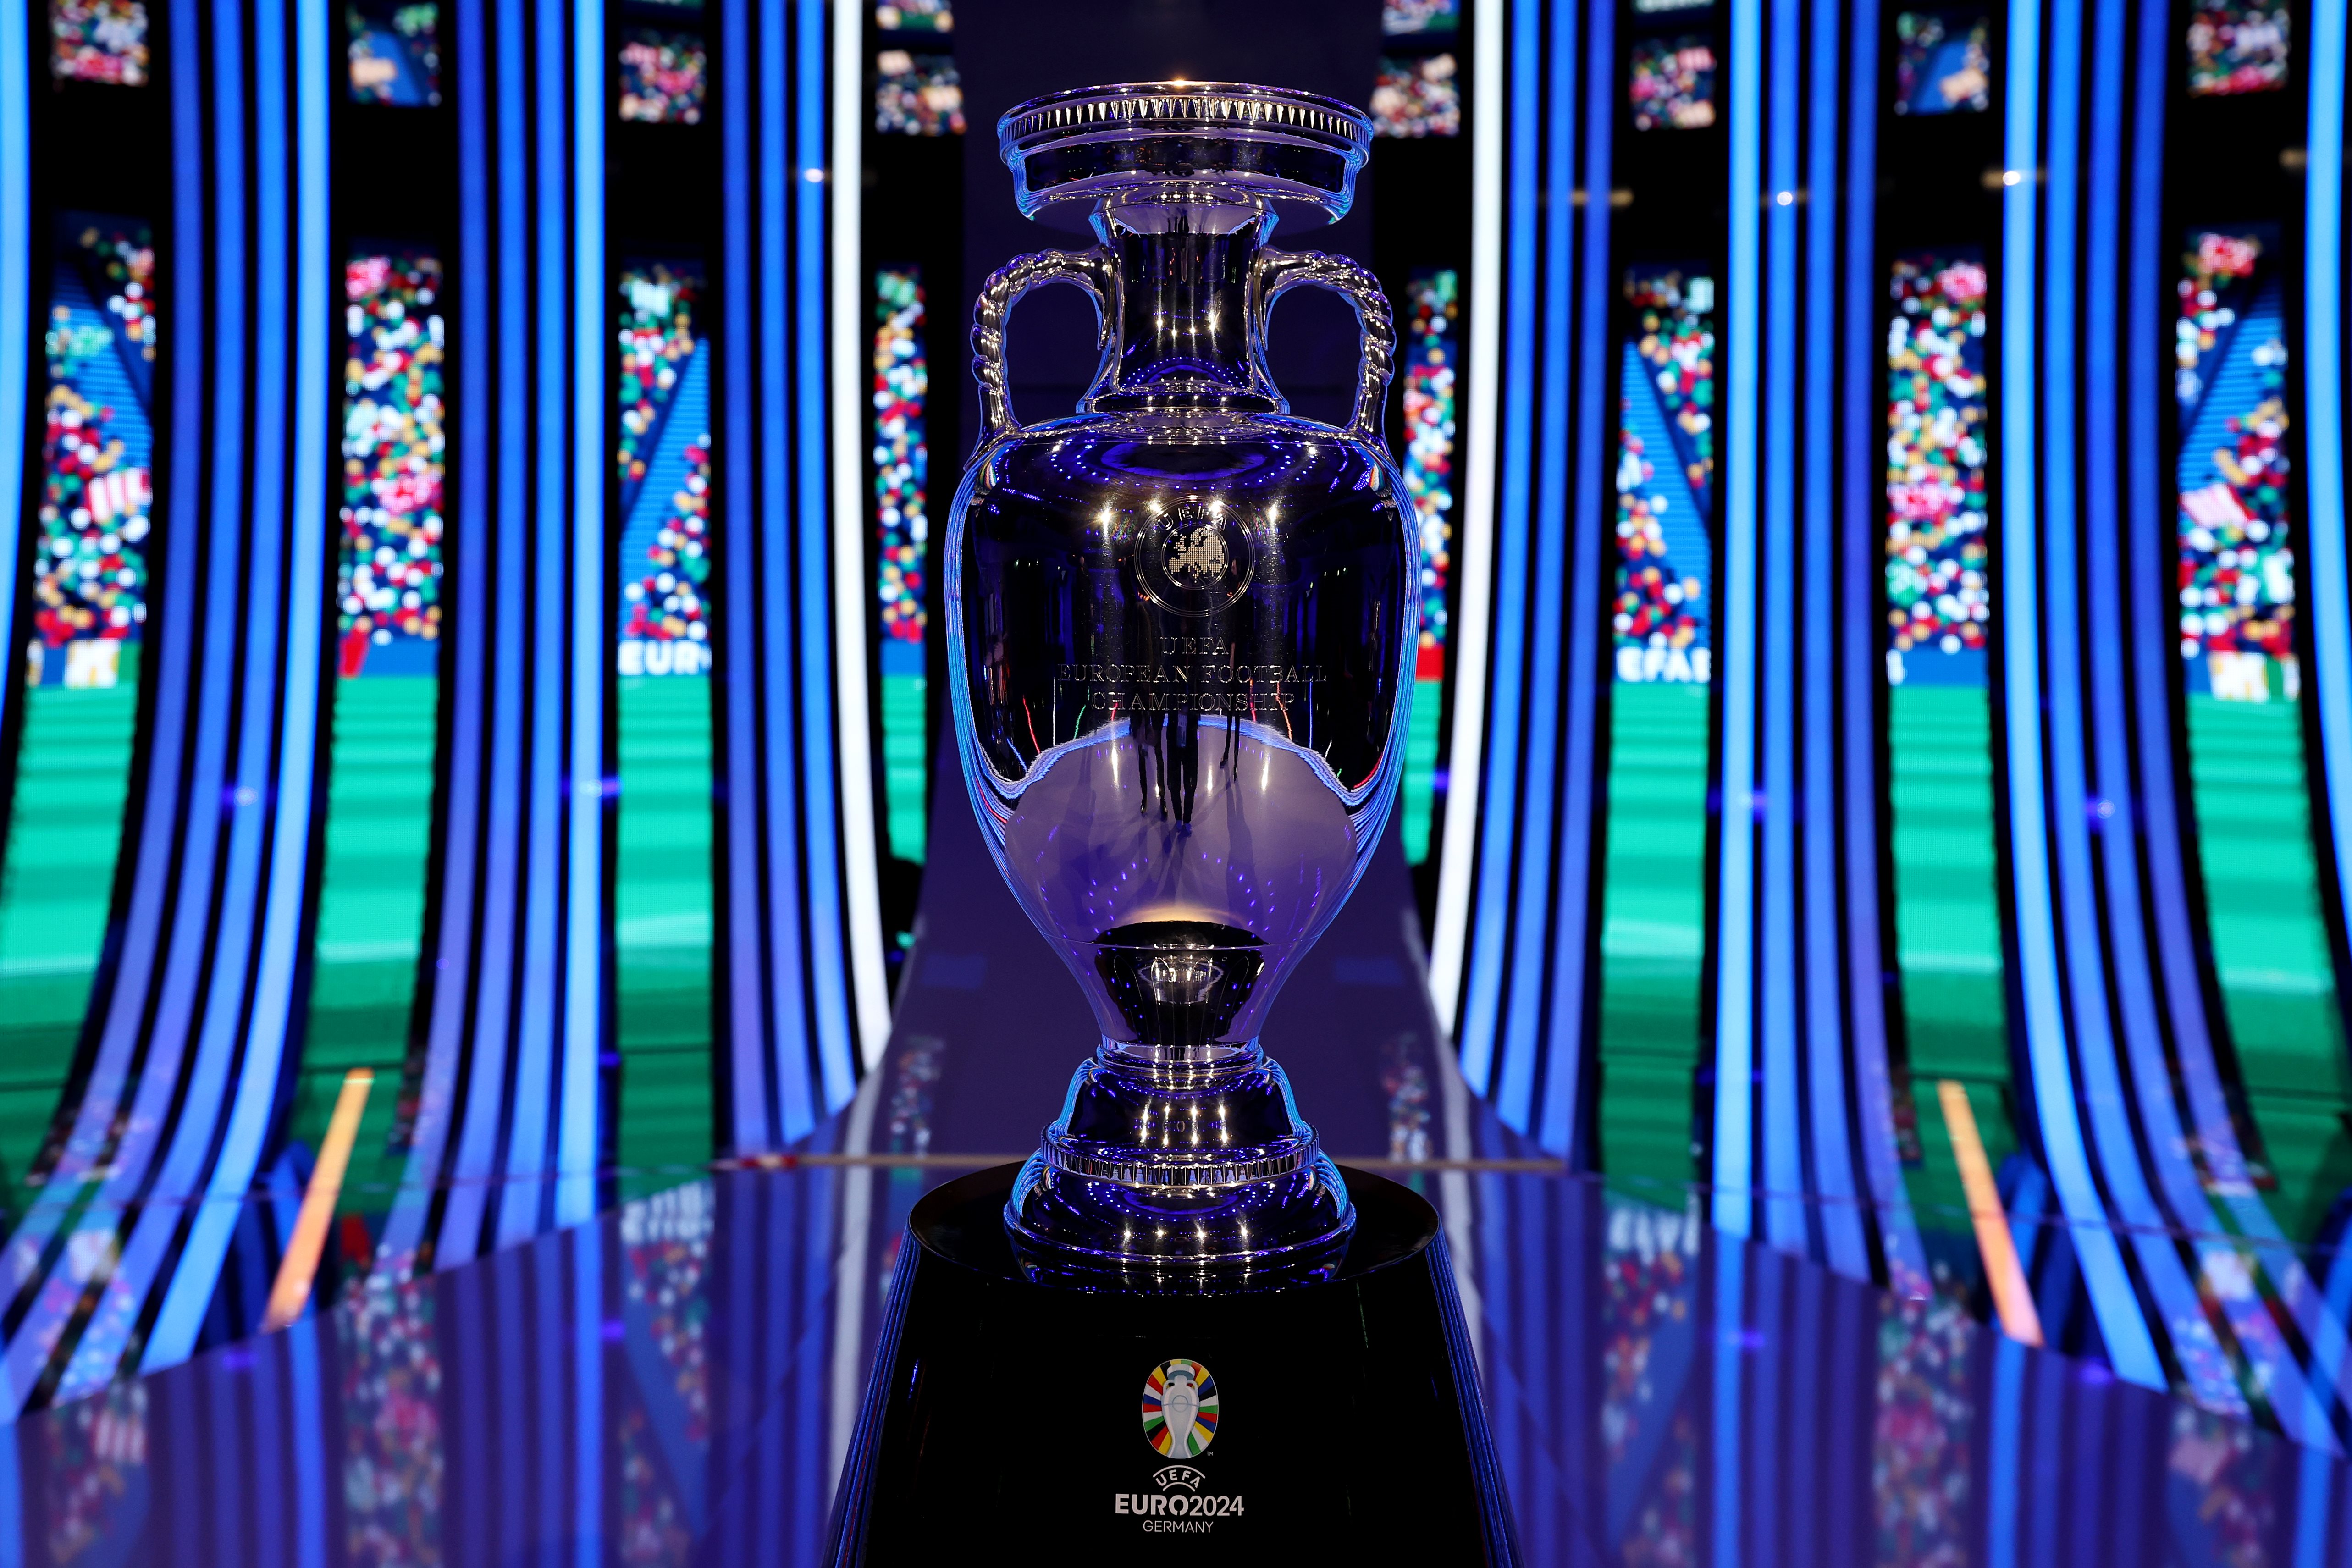 Euro 2016: todos os jogos de preparação e resultados